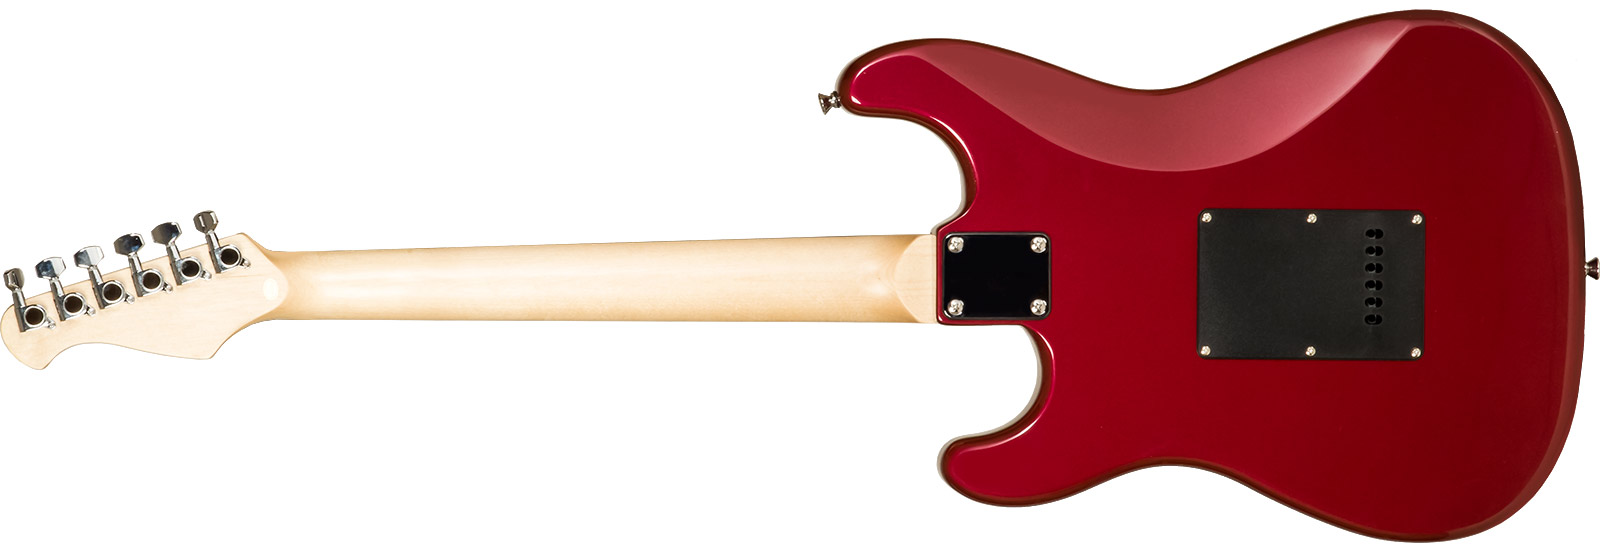 Eastone Str70t 3s Trem Pur - Dark Red - Str shape electric guitar - Variation 6